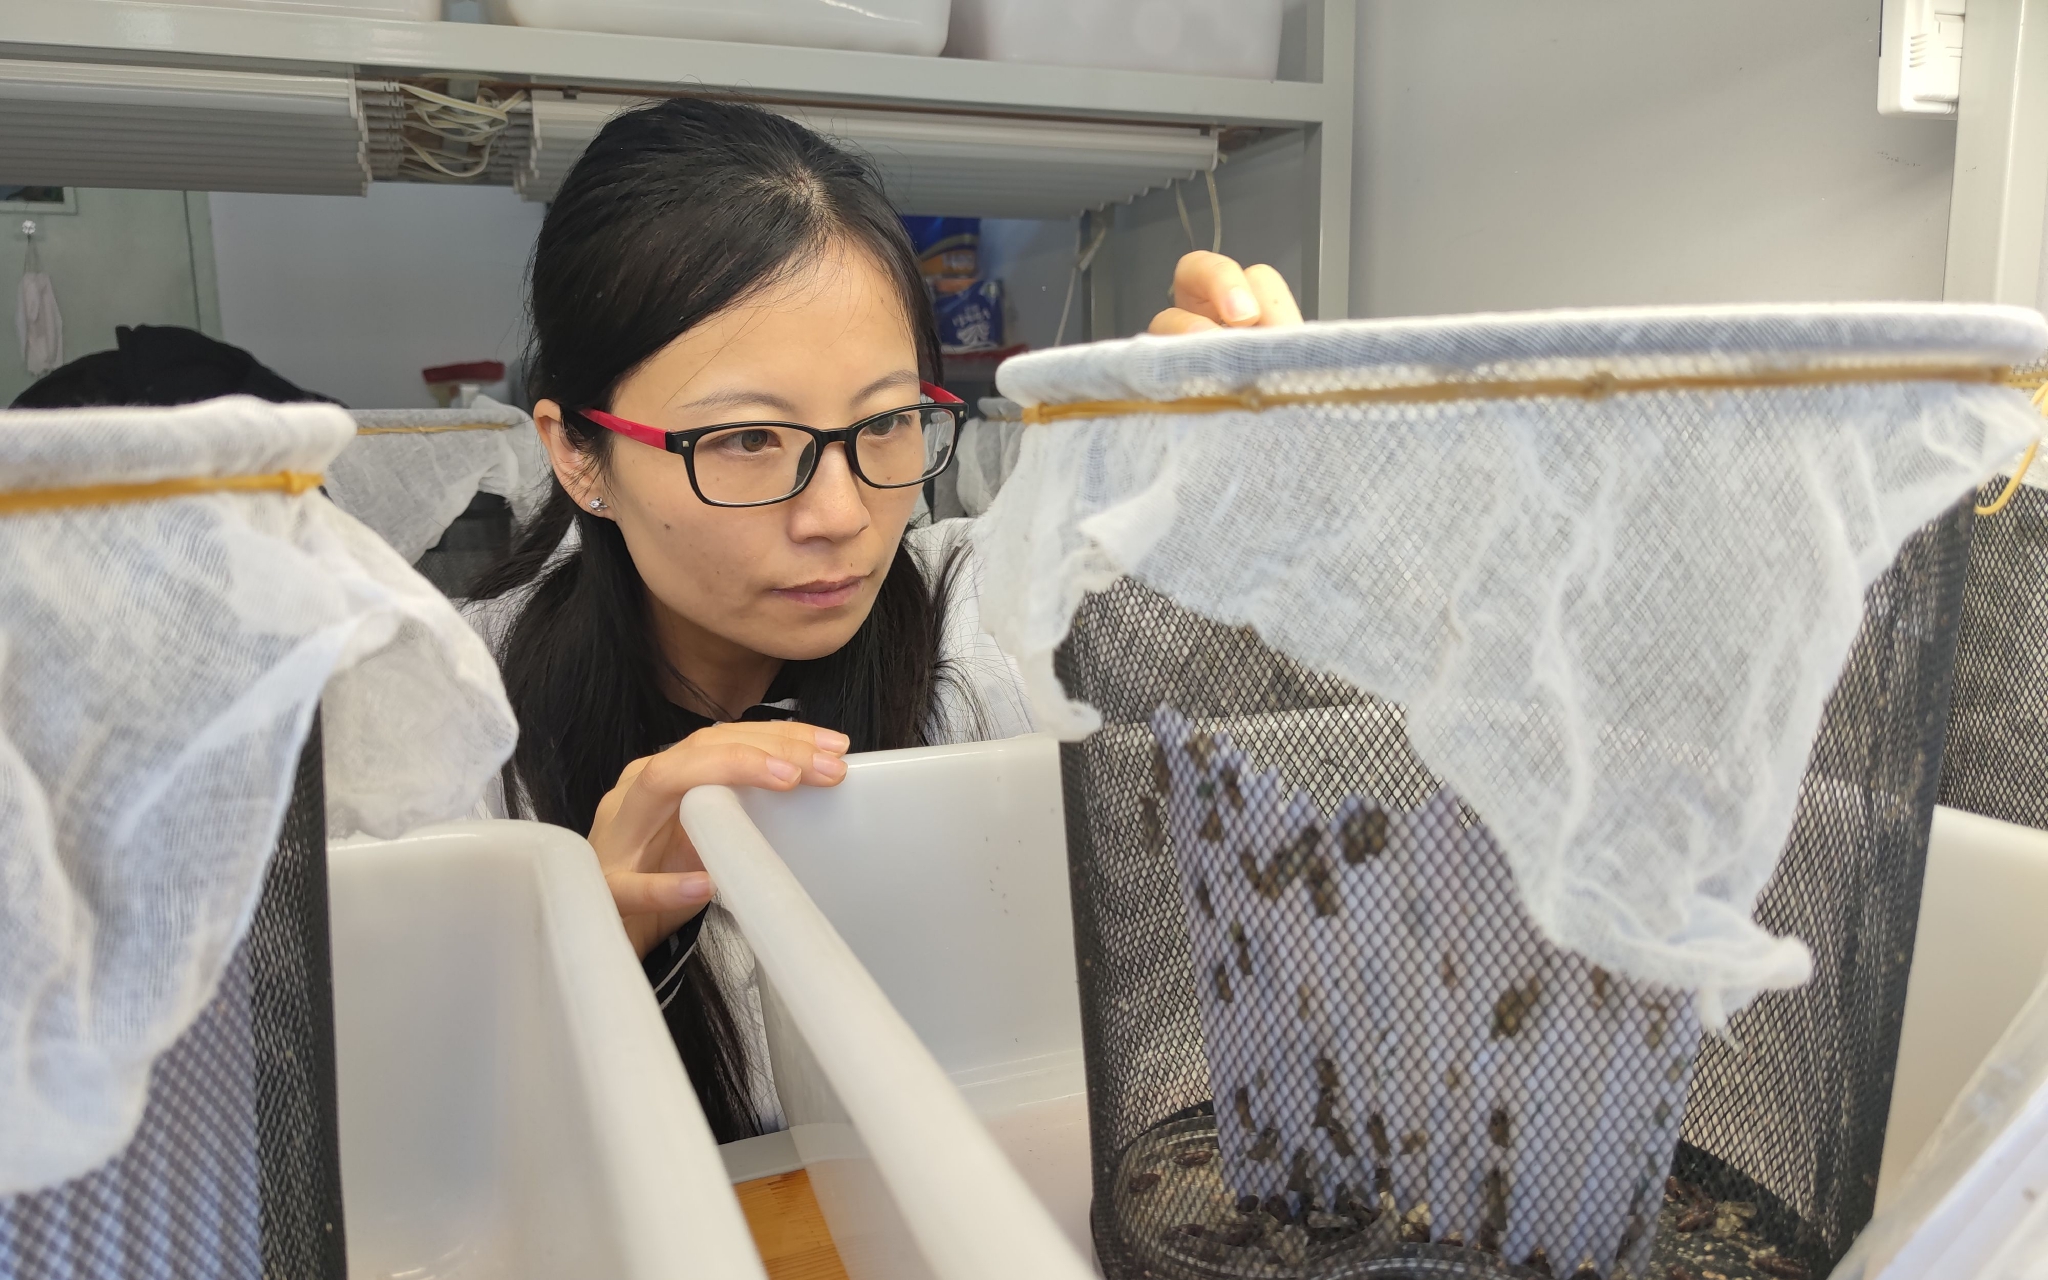 中国农科院植保所副研究员崔丽在实验室里忙碌。新京报记者 王巍 摄